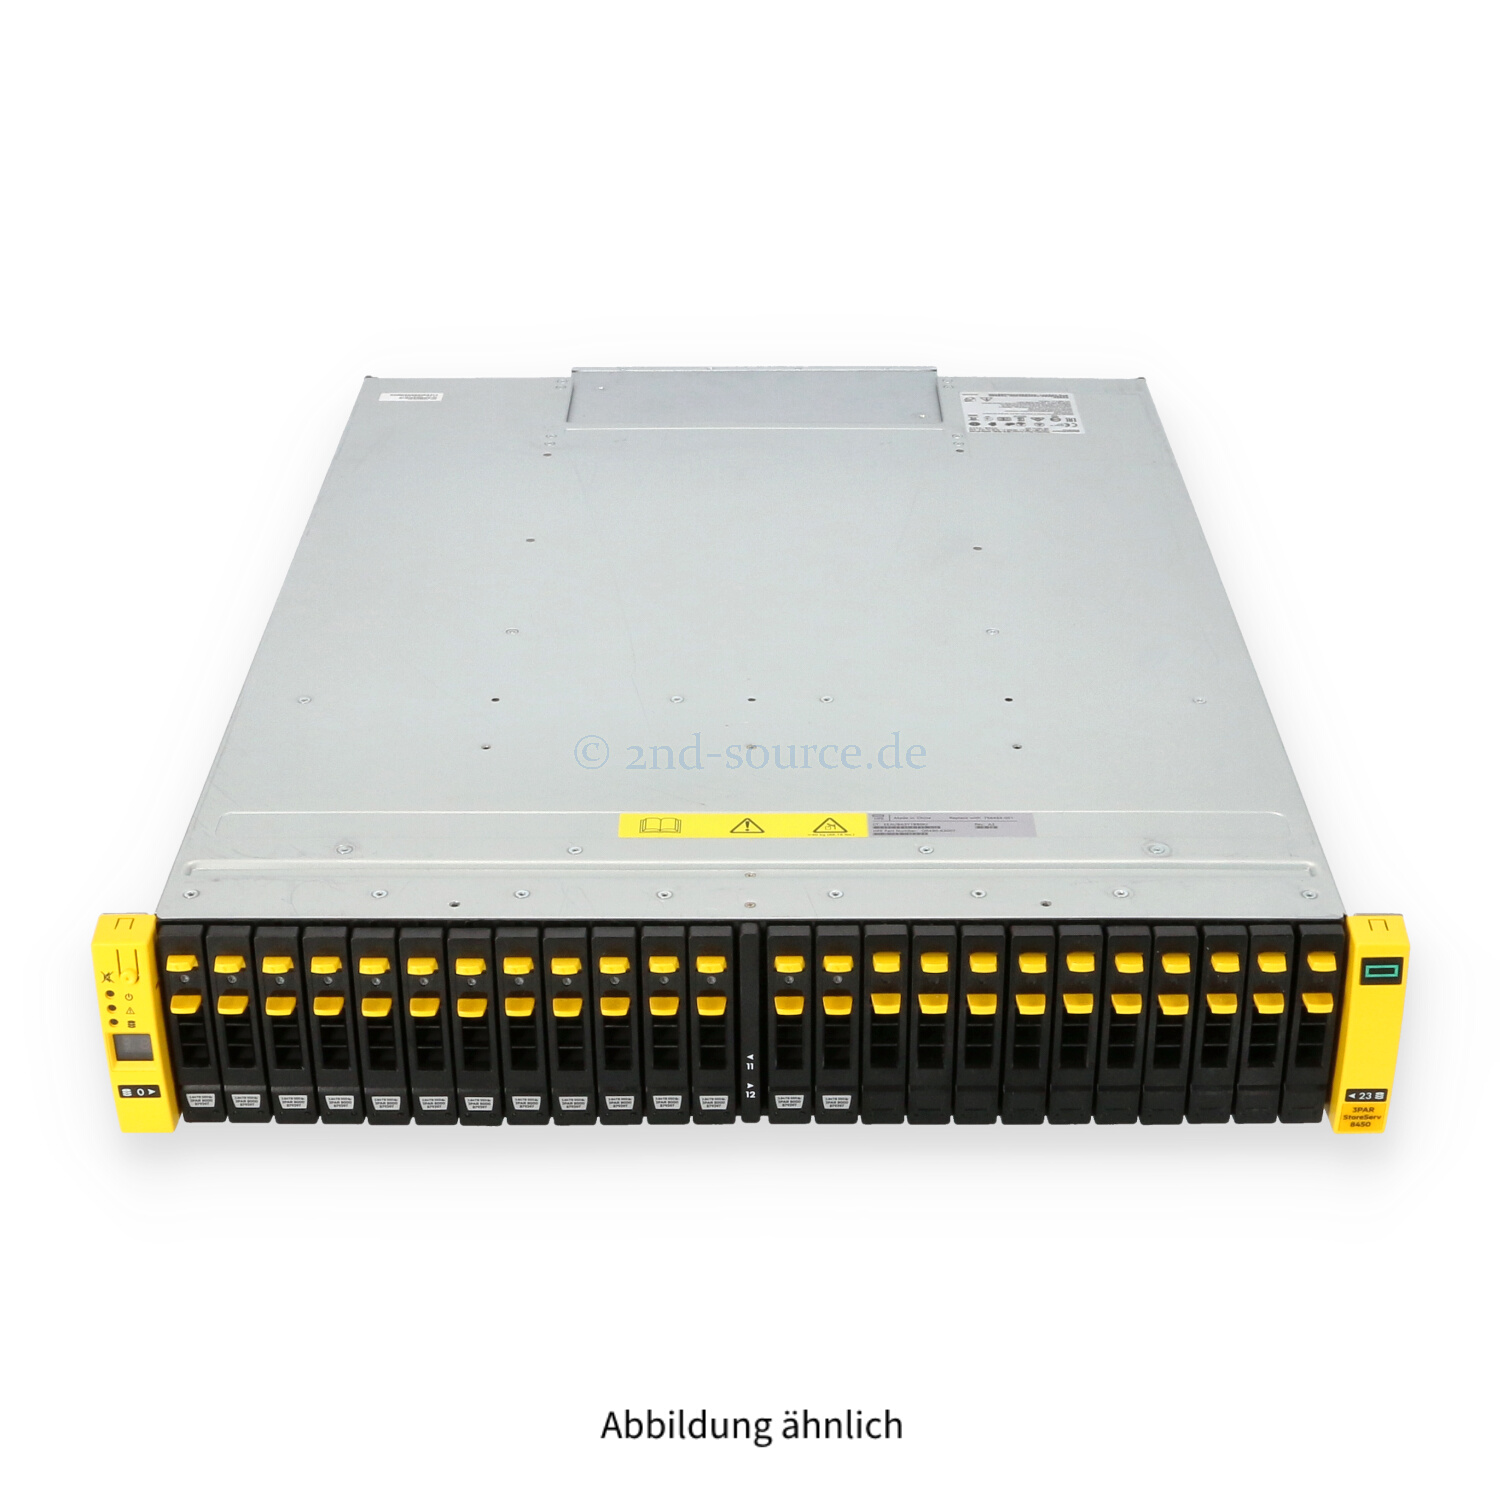 HPE 3PAR StoreServ 8450 SAN Storage Enclosure mit 14x 3.84TB SAS 12G SFF 2-Node 2x 764W